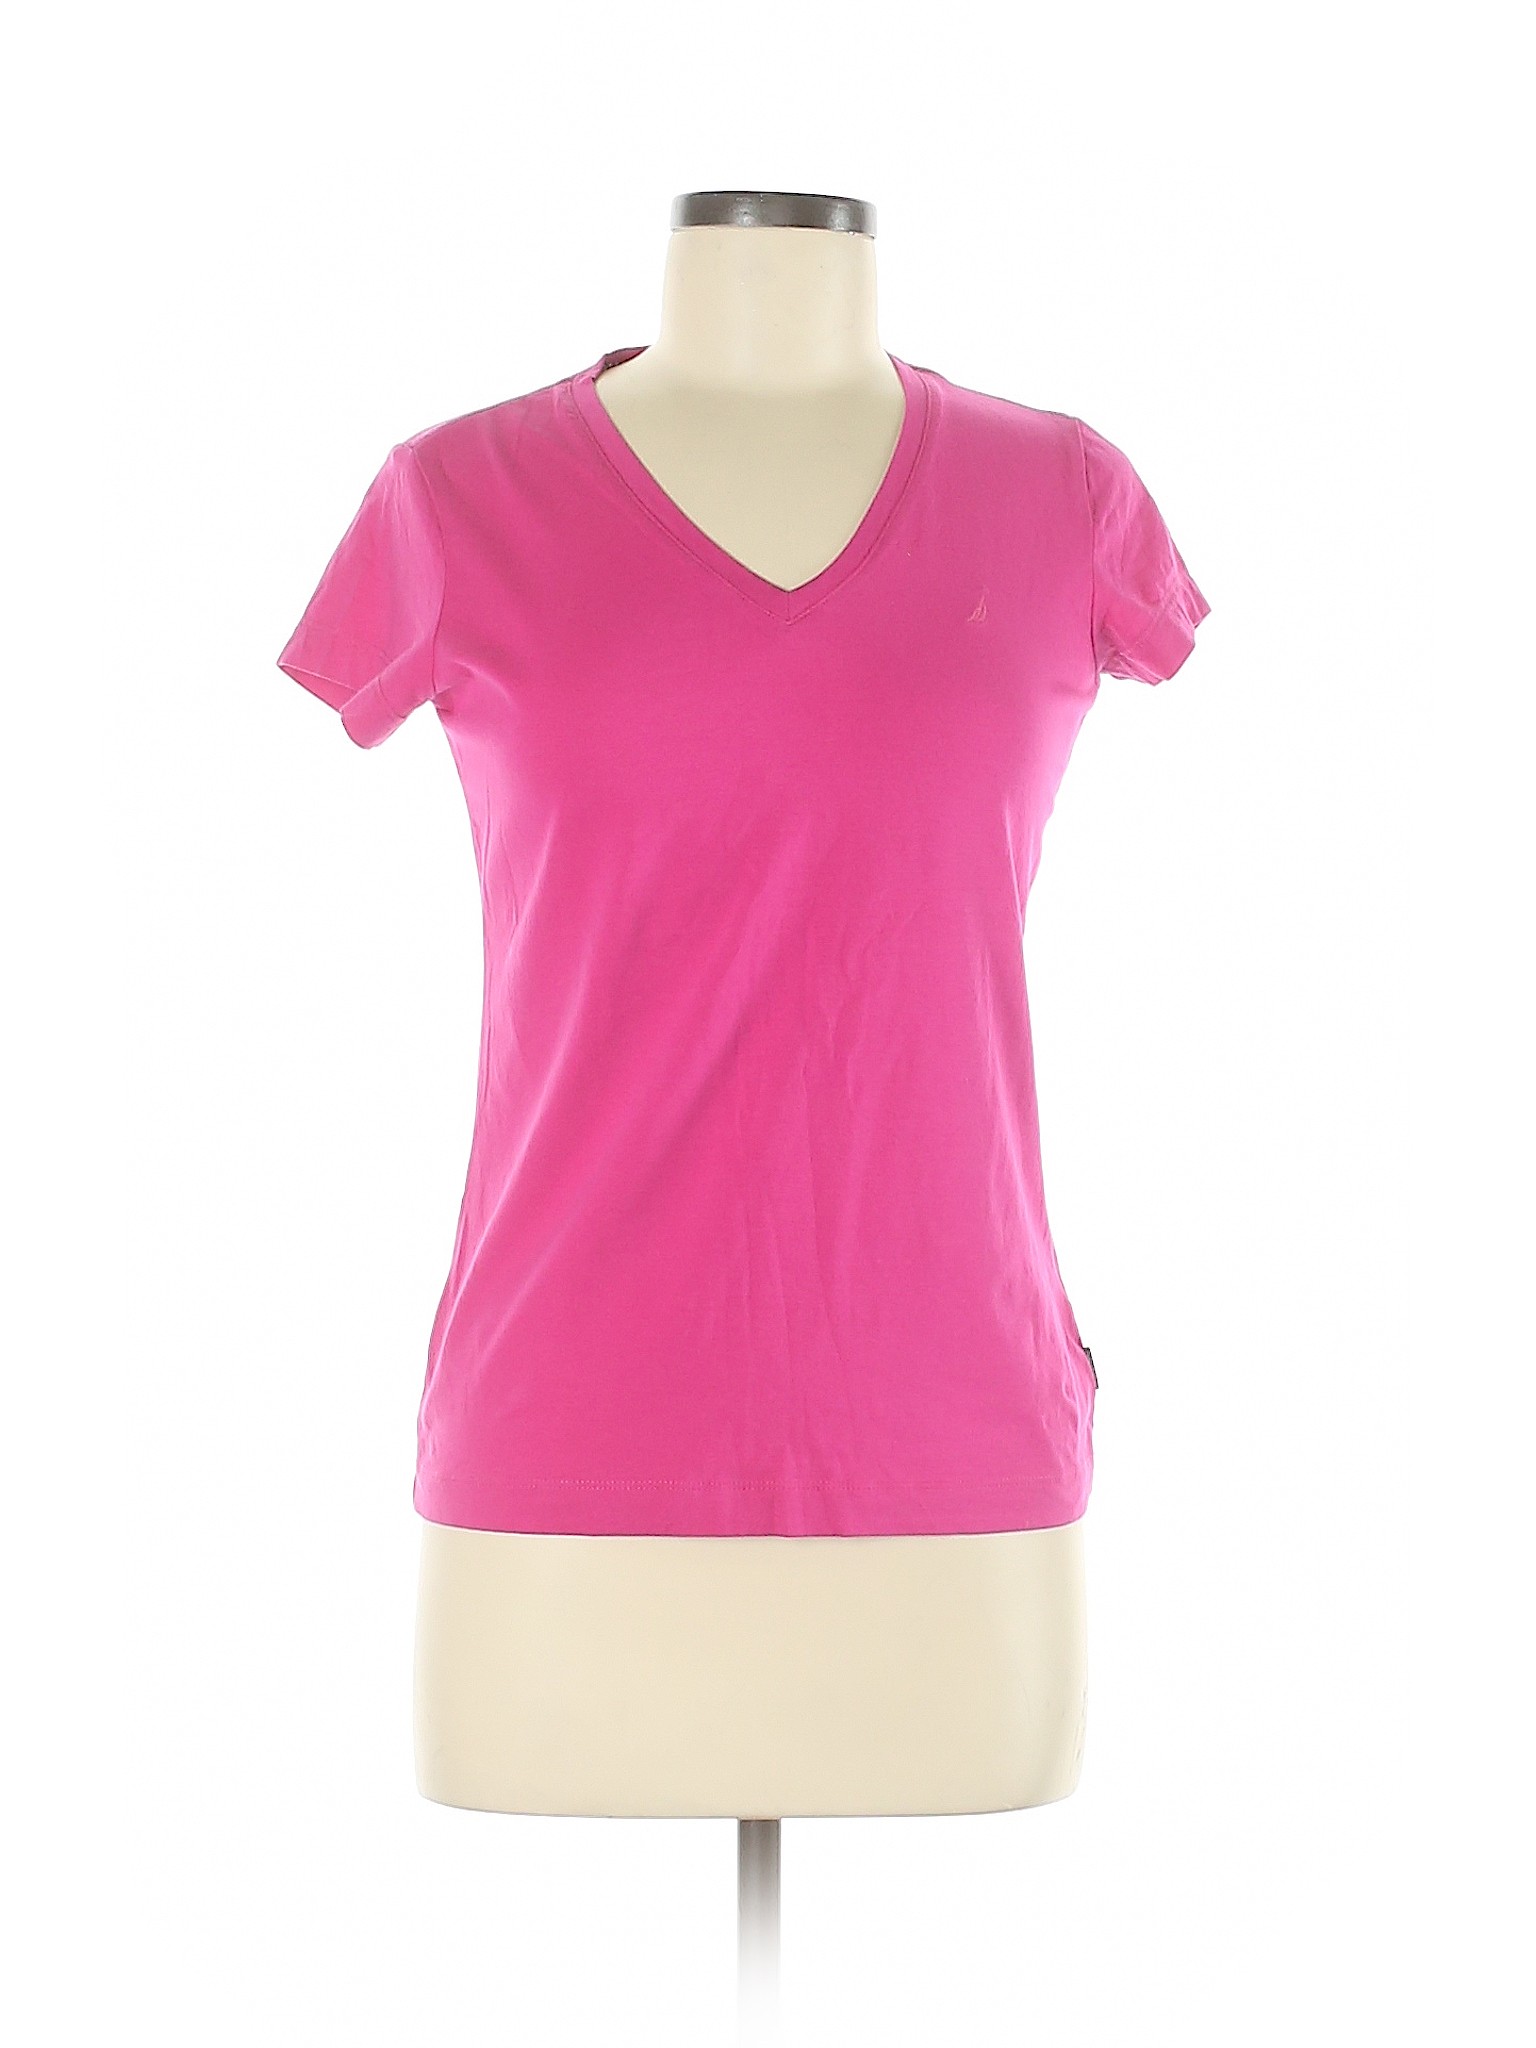 Nautica Women Pink Short Sleeve T-Shirt S | eBay